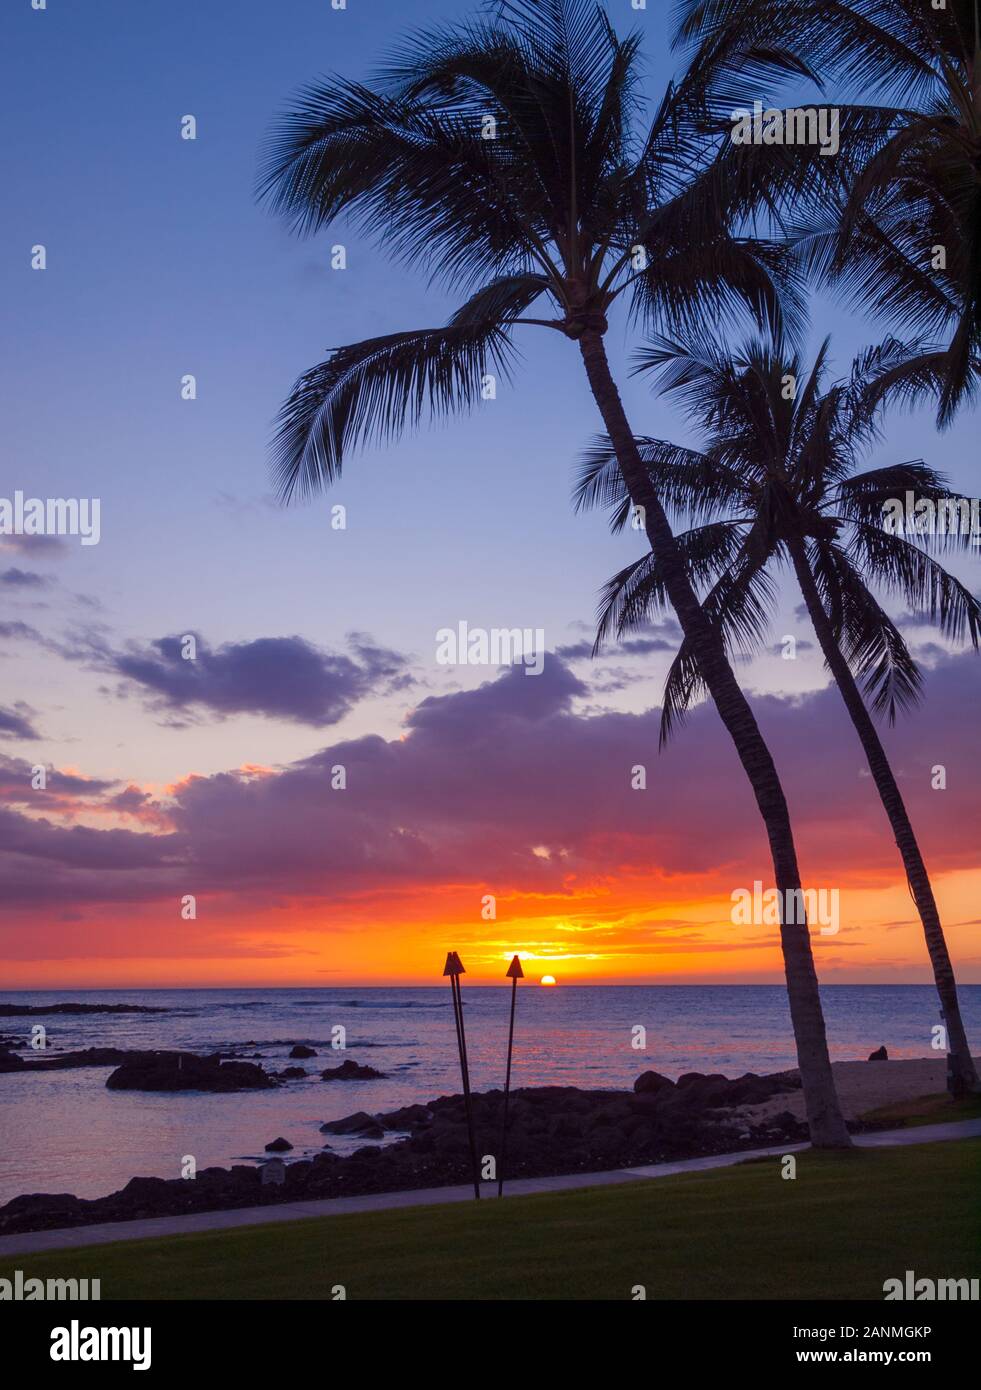 Einen wunderschönen Sonnenuntergang und Silhouette Kokospalmen von Pauoa Bay im Fairmont Orchid, Kohala Coast, Hawaii gesehen. Stockfoto